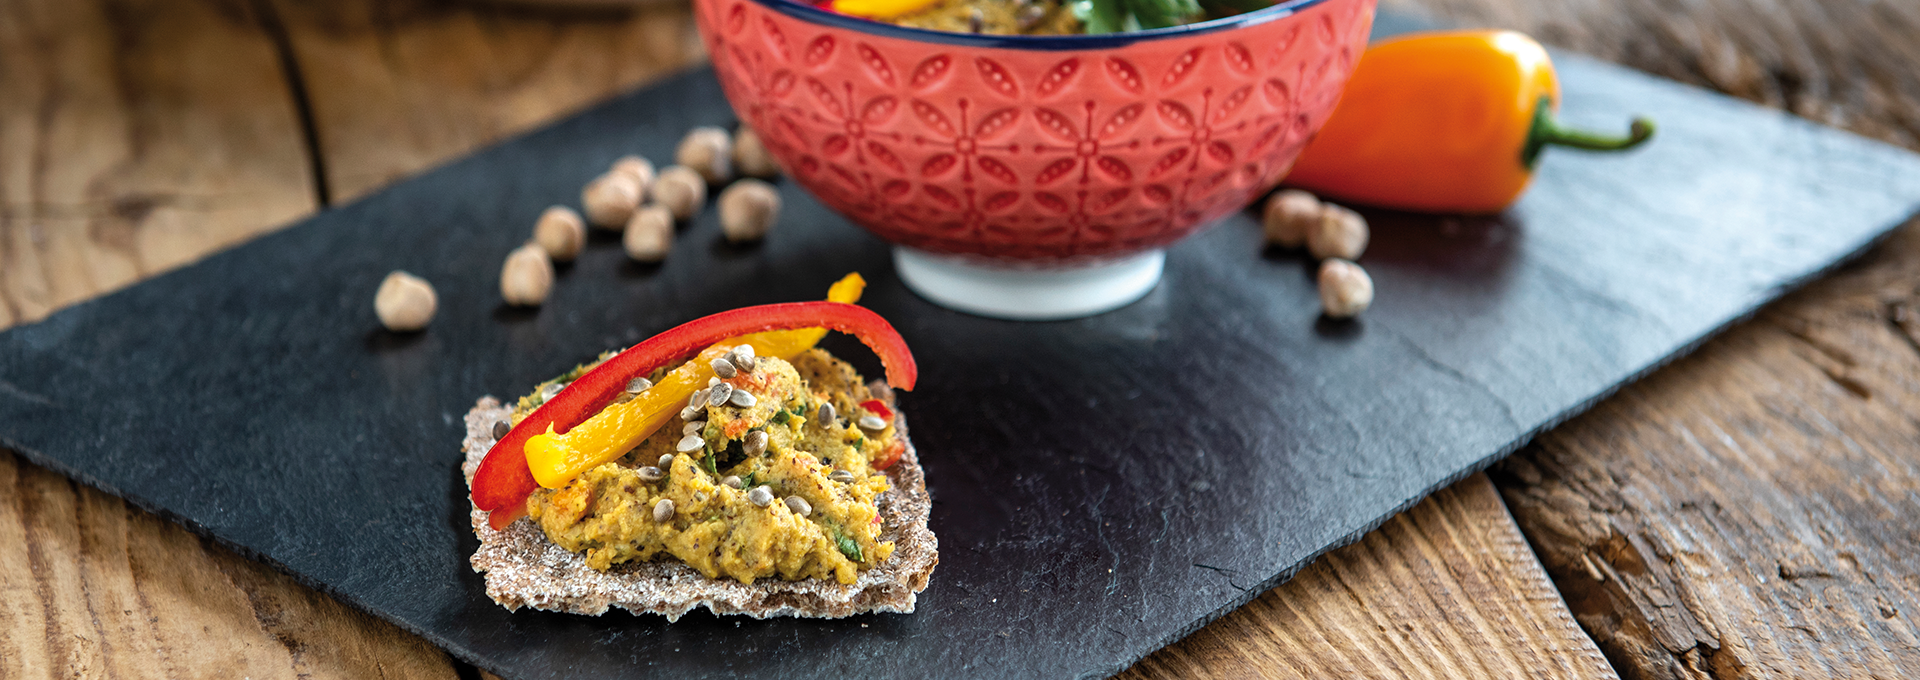 Hanf-Hummus mit Paprika und Curry